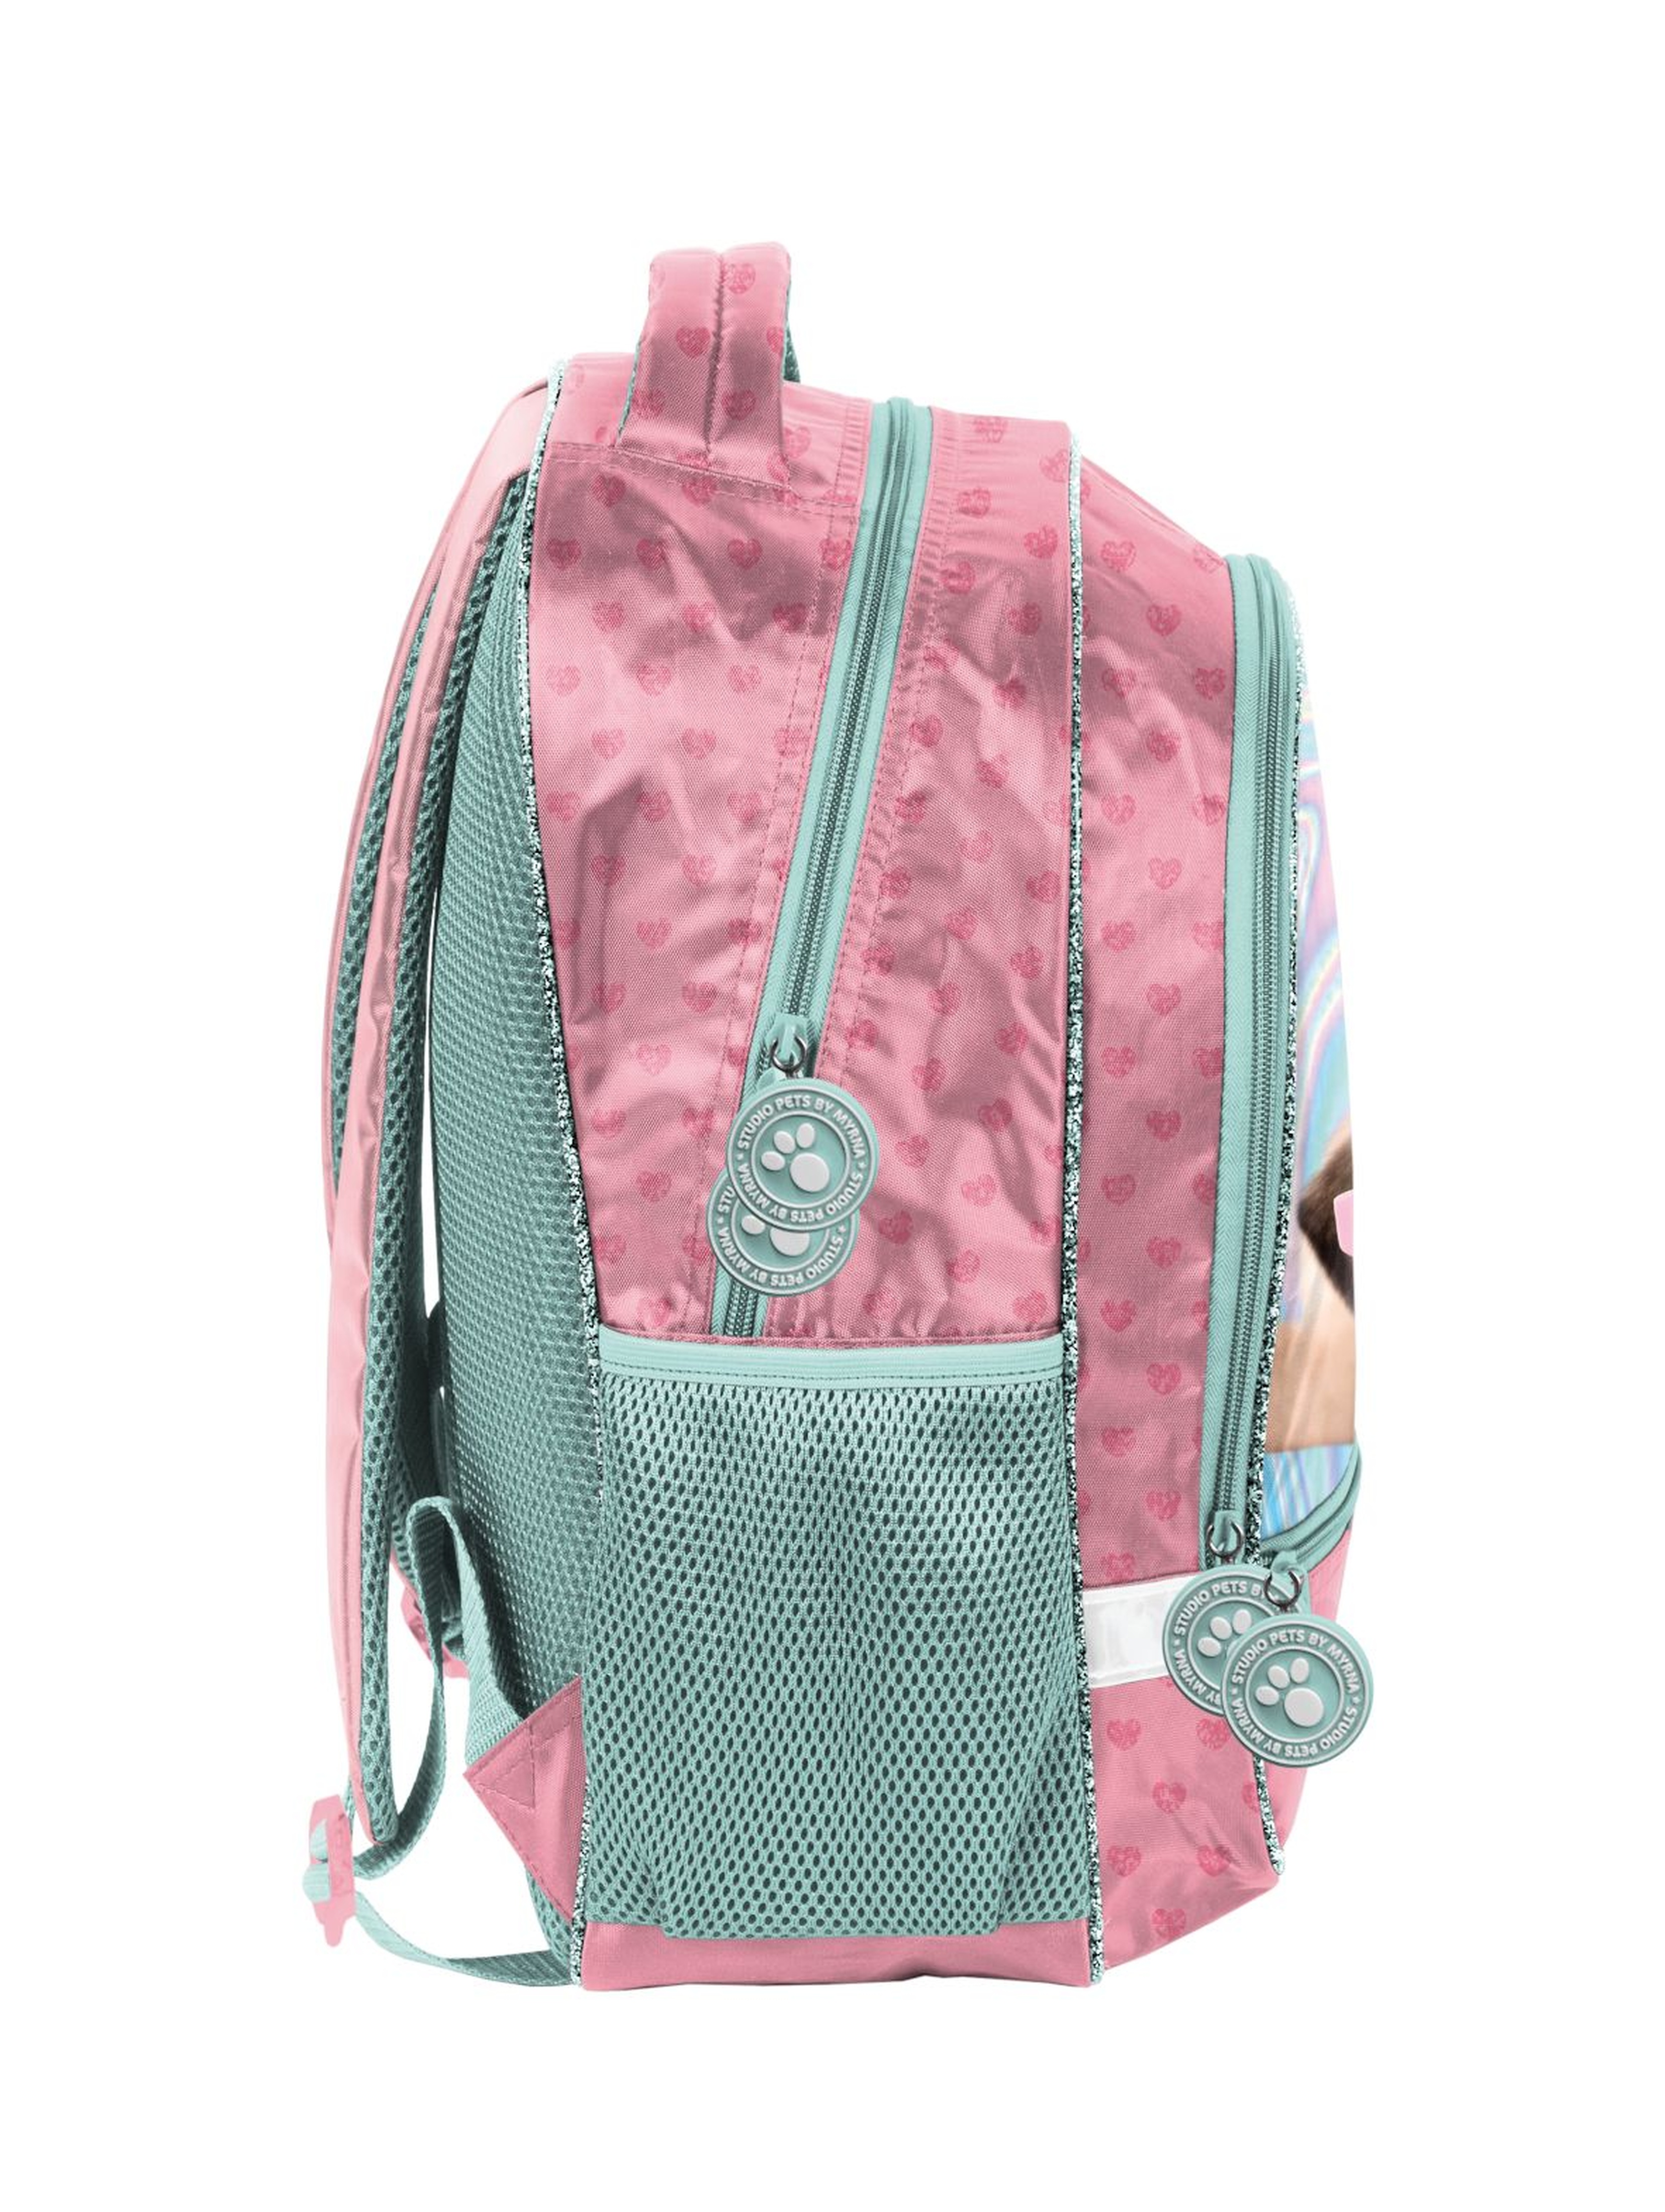 Plecak szkolny dwukomorowy miętowo-różowy z pieskiem